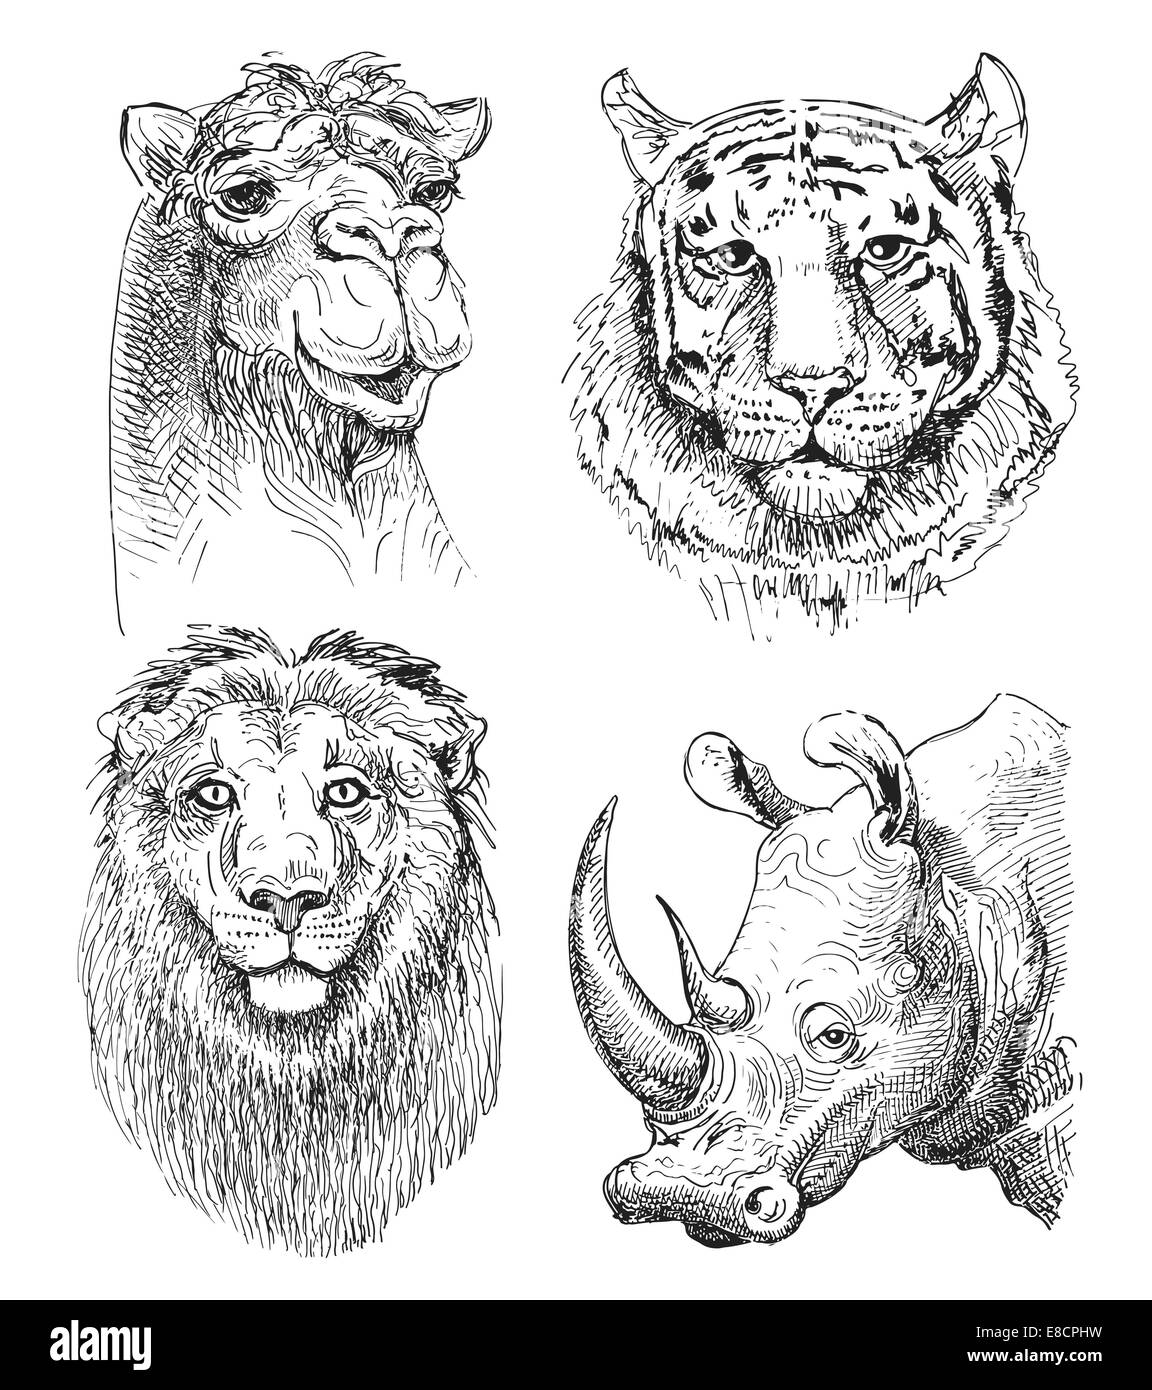 Satz Von Safari Kopf Tiere Schwarz Weiss Skizze Zeichnung Stockfotografie Alamy